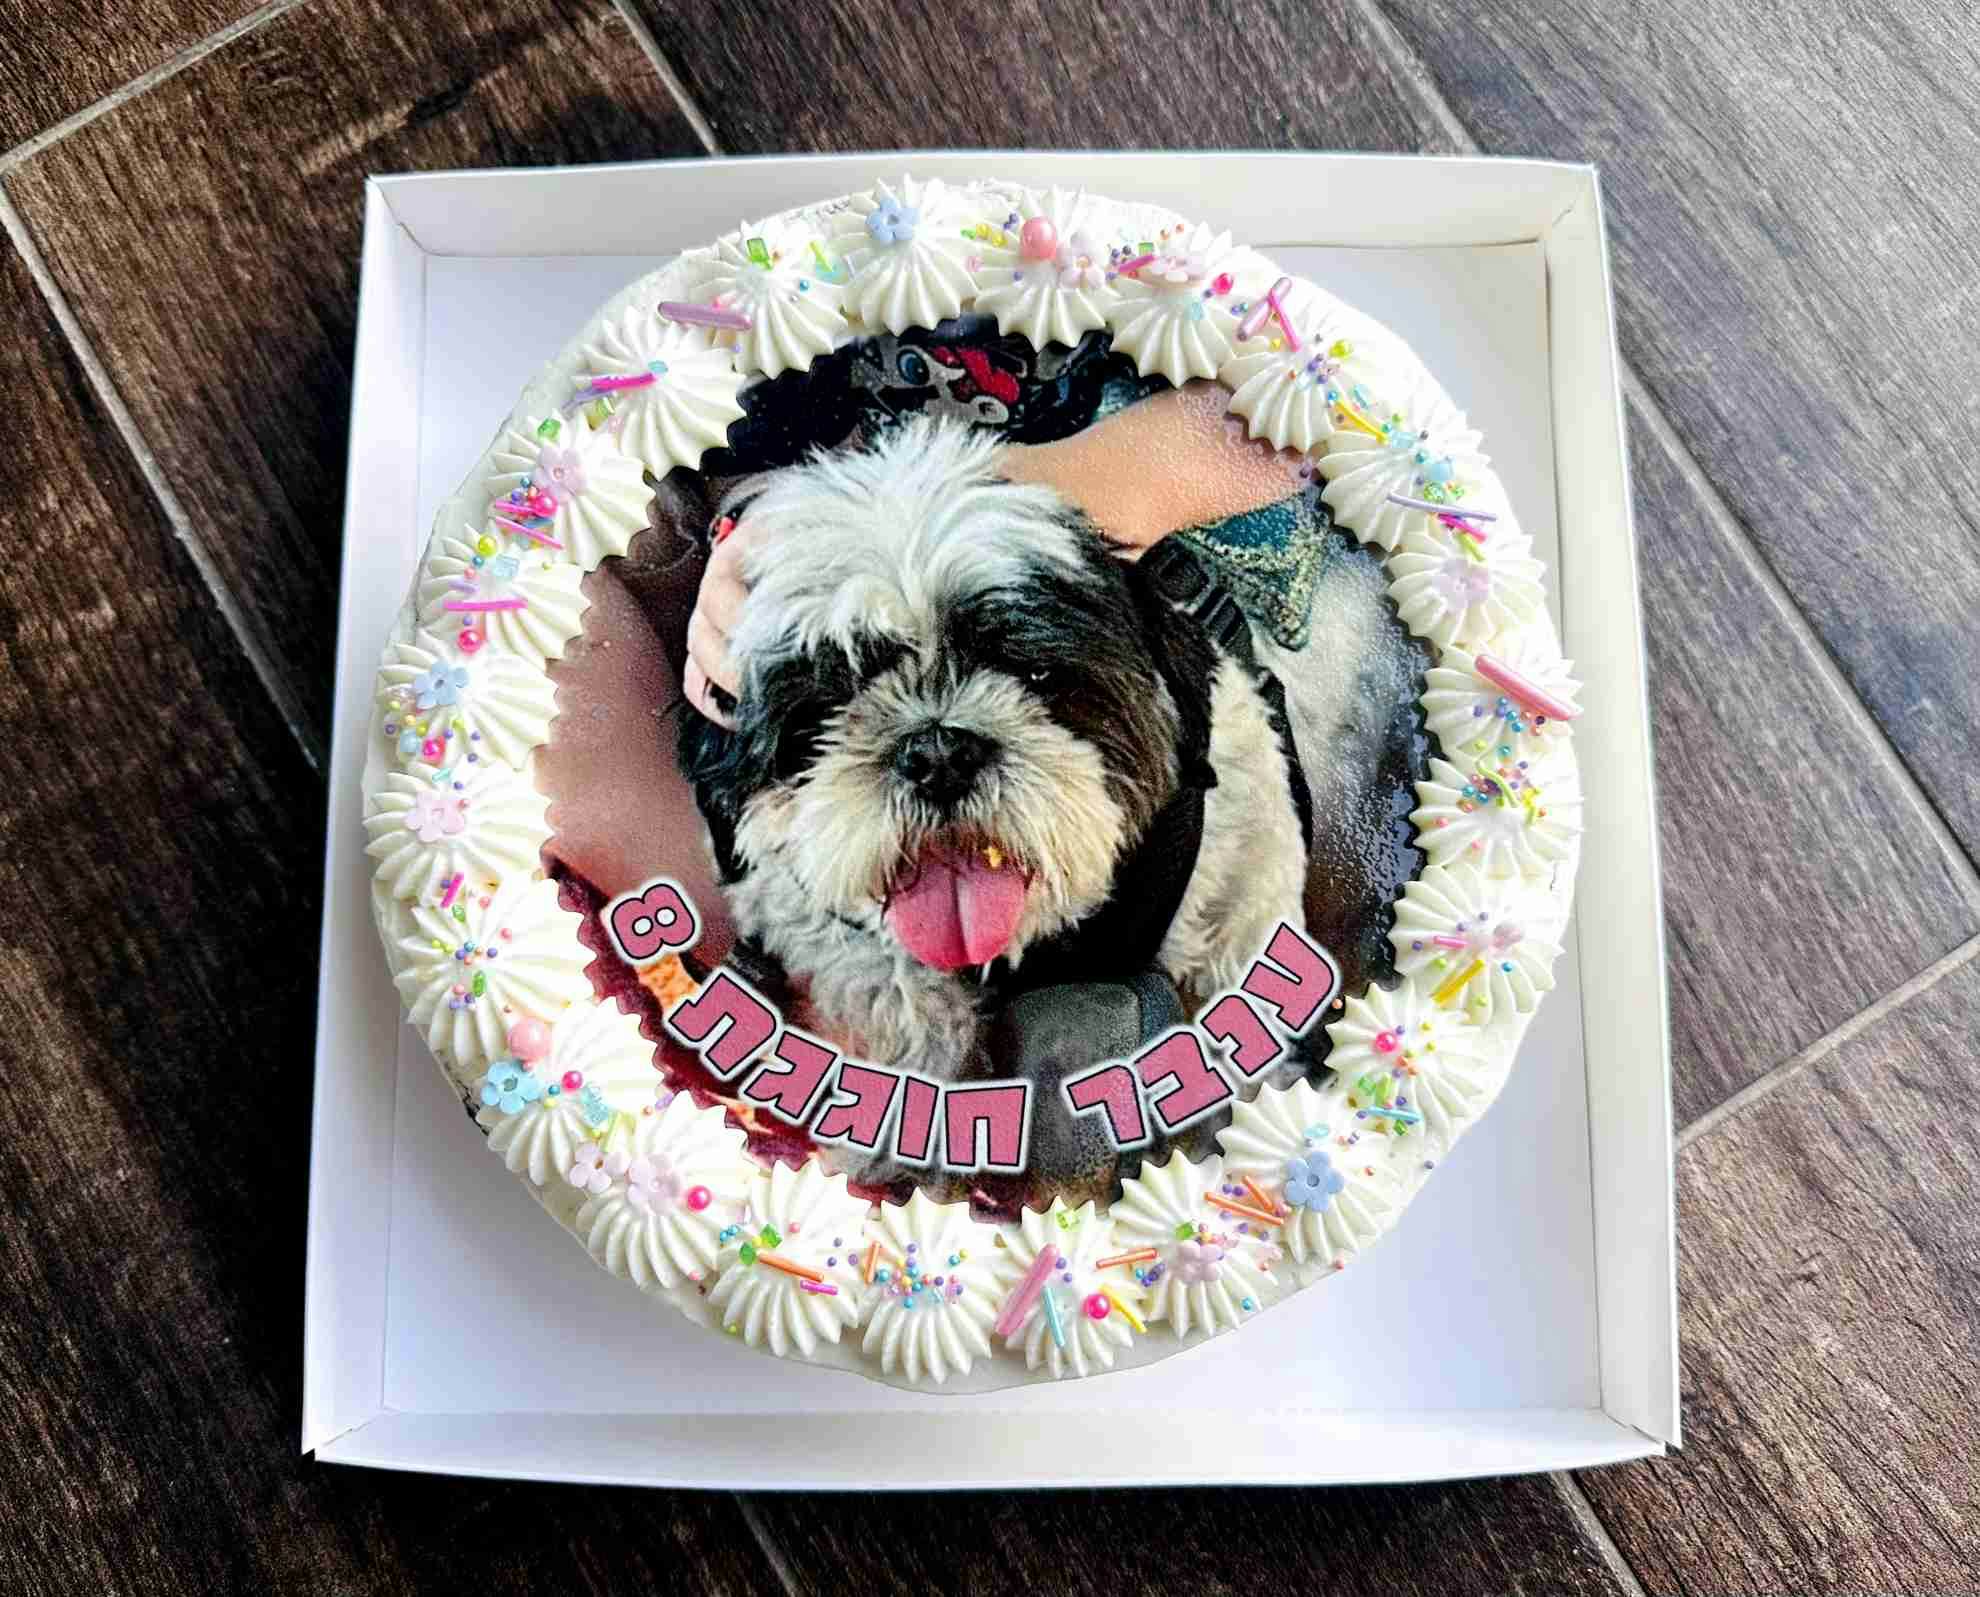 עוגת גן כלב - עוגת שוקולד עסיסית עם גנאש שוקולד בלגי, זילוף קרם ודף סוכר בעיצוב אישי